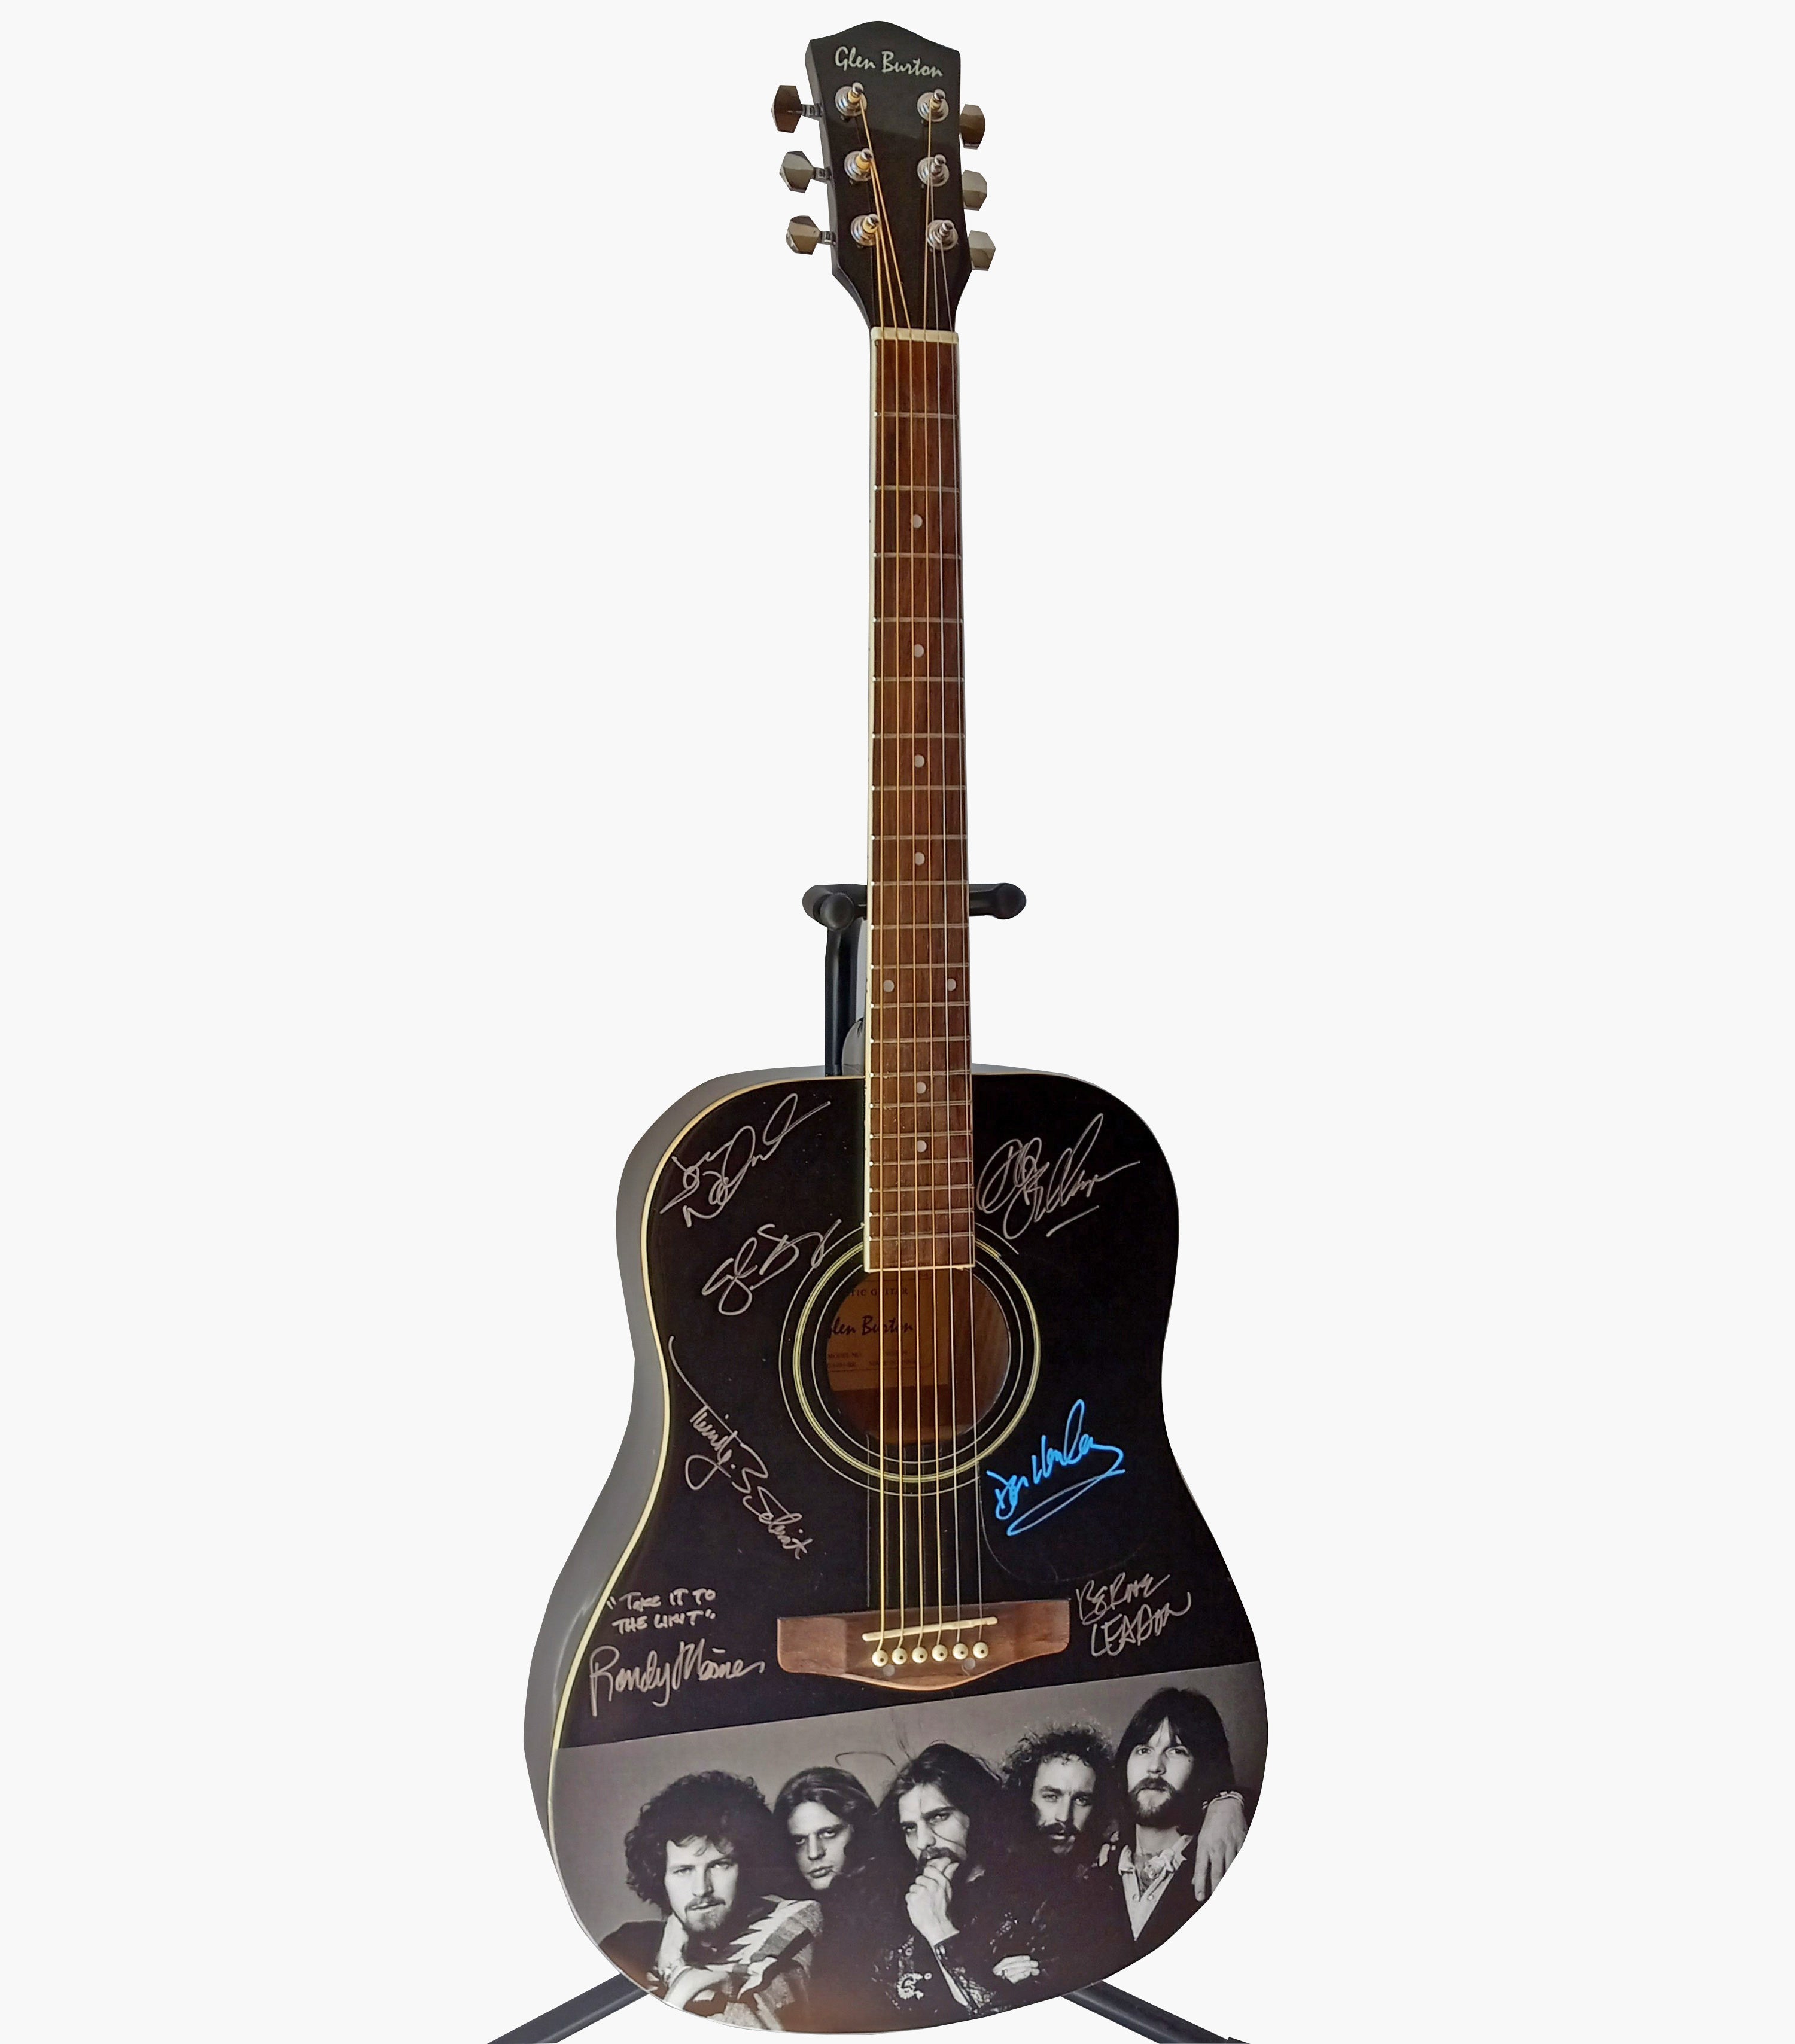 Don Henley, Glen Frey, Joe Walsh, Bernie Leadon, Don Felder, Randy Meisner signed one of a kind guitar with proof